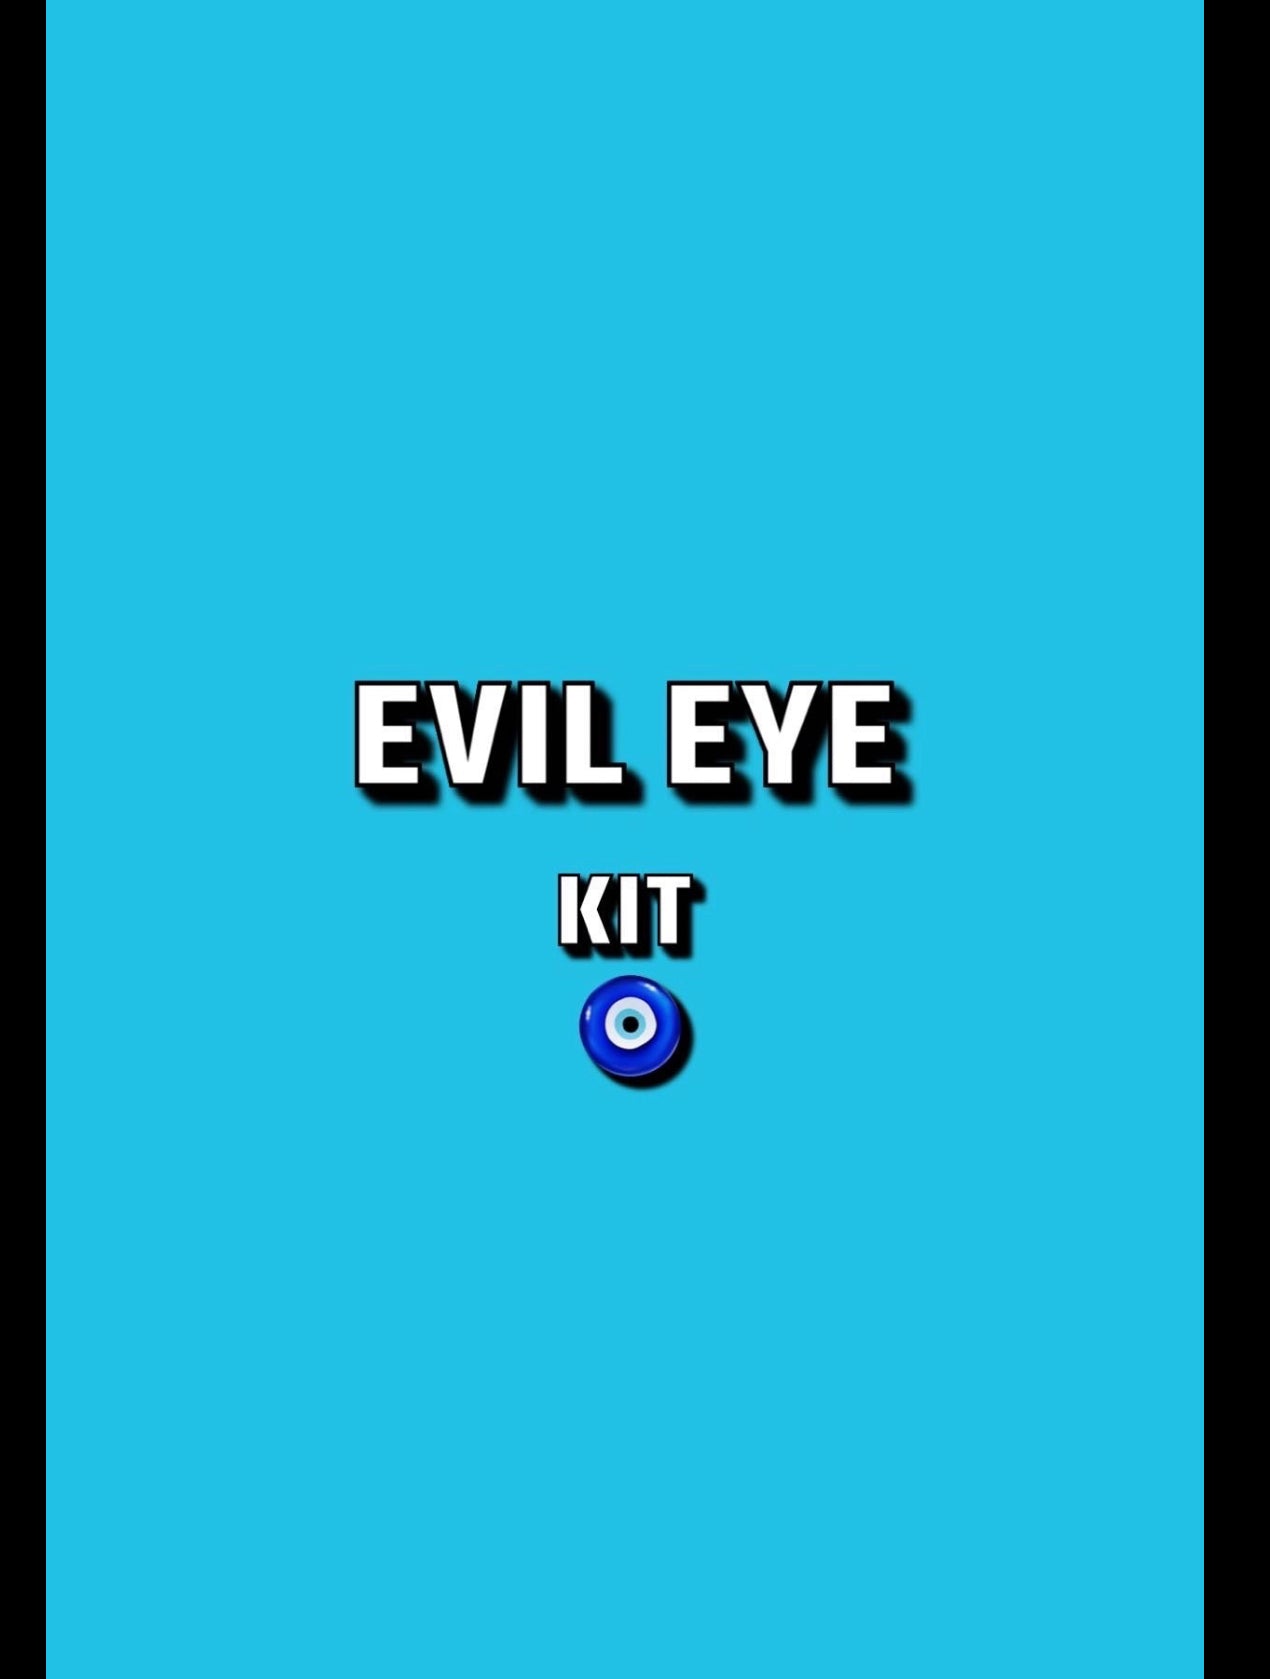 Evil eye kit